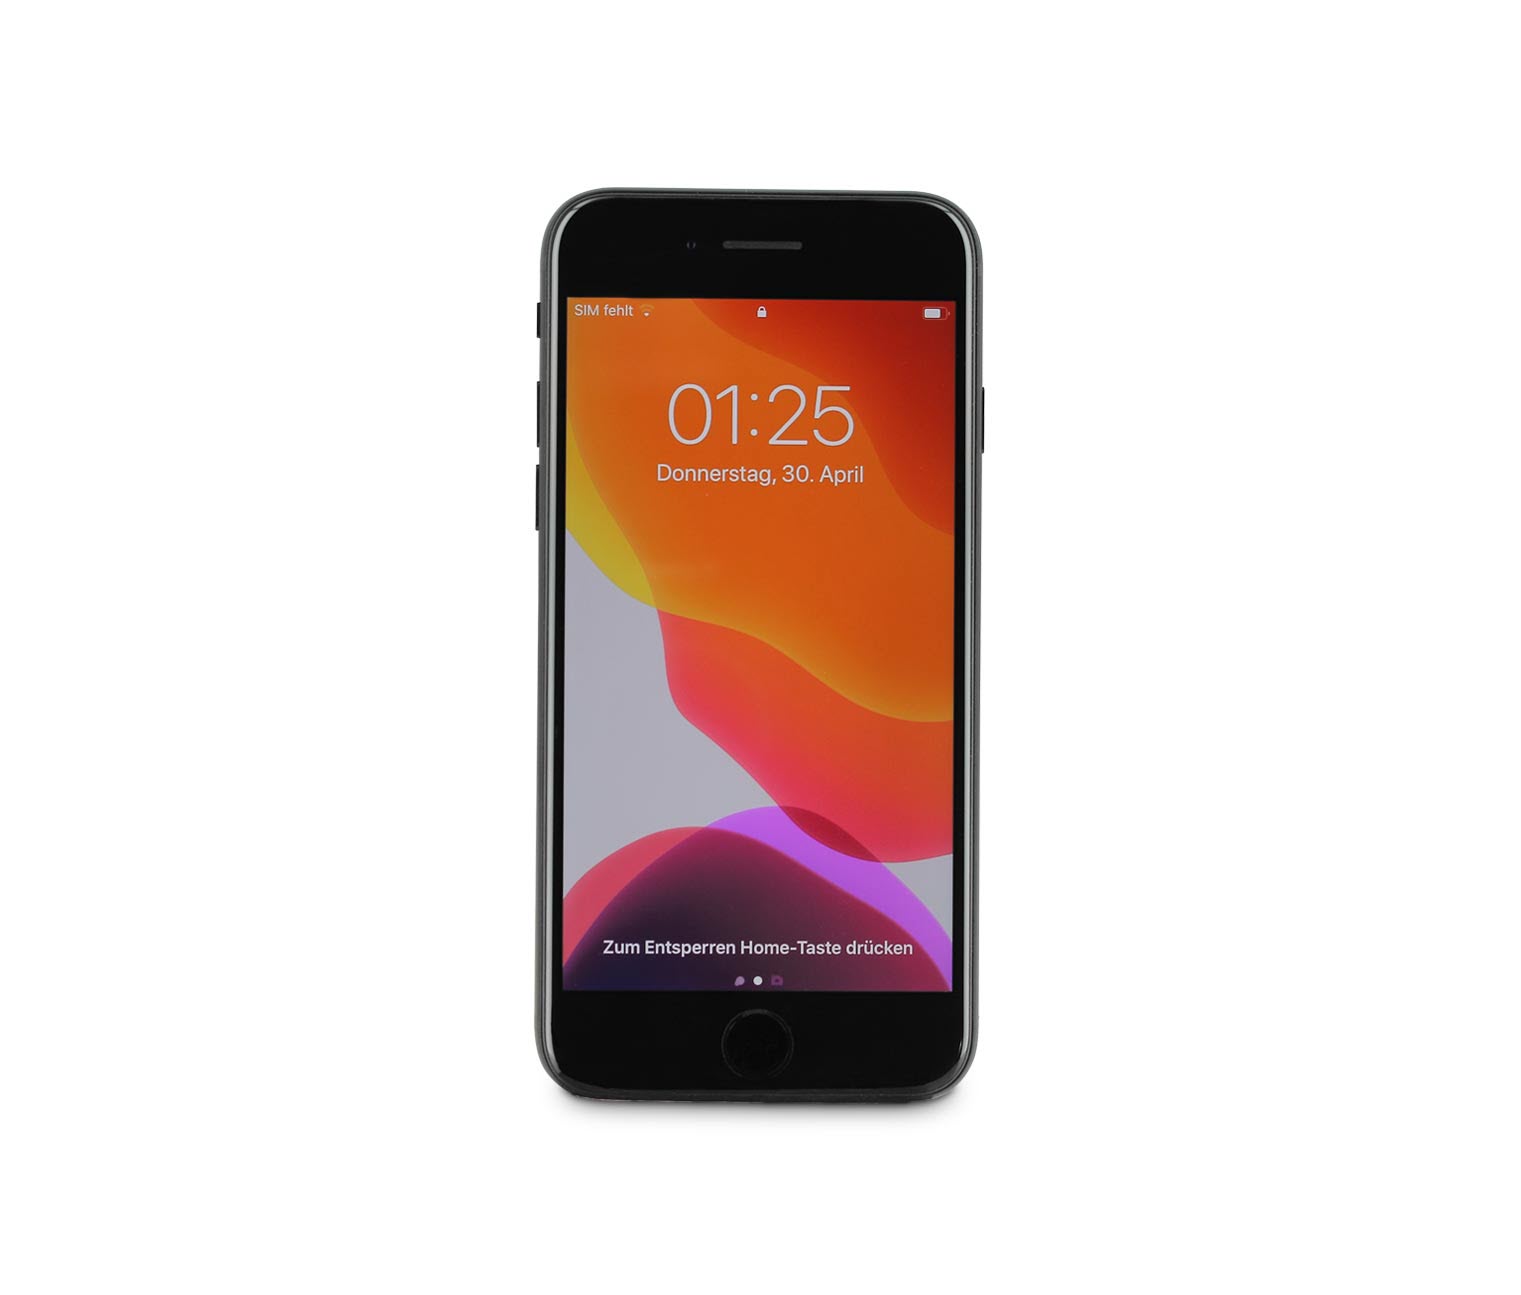 Apple iPhone SE 2020 64 GB schwarz (Refurbished) online bestellen bei Tchibo  520894